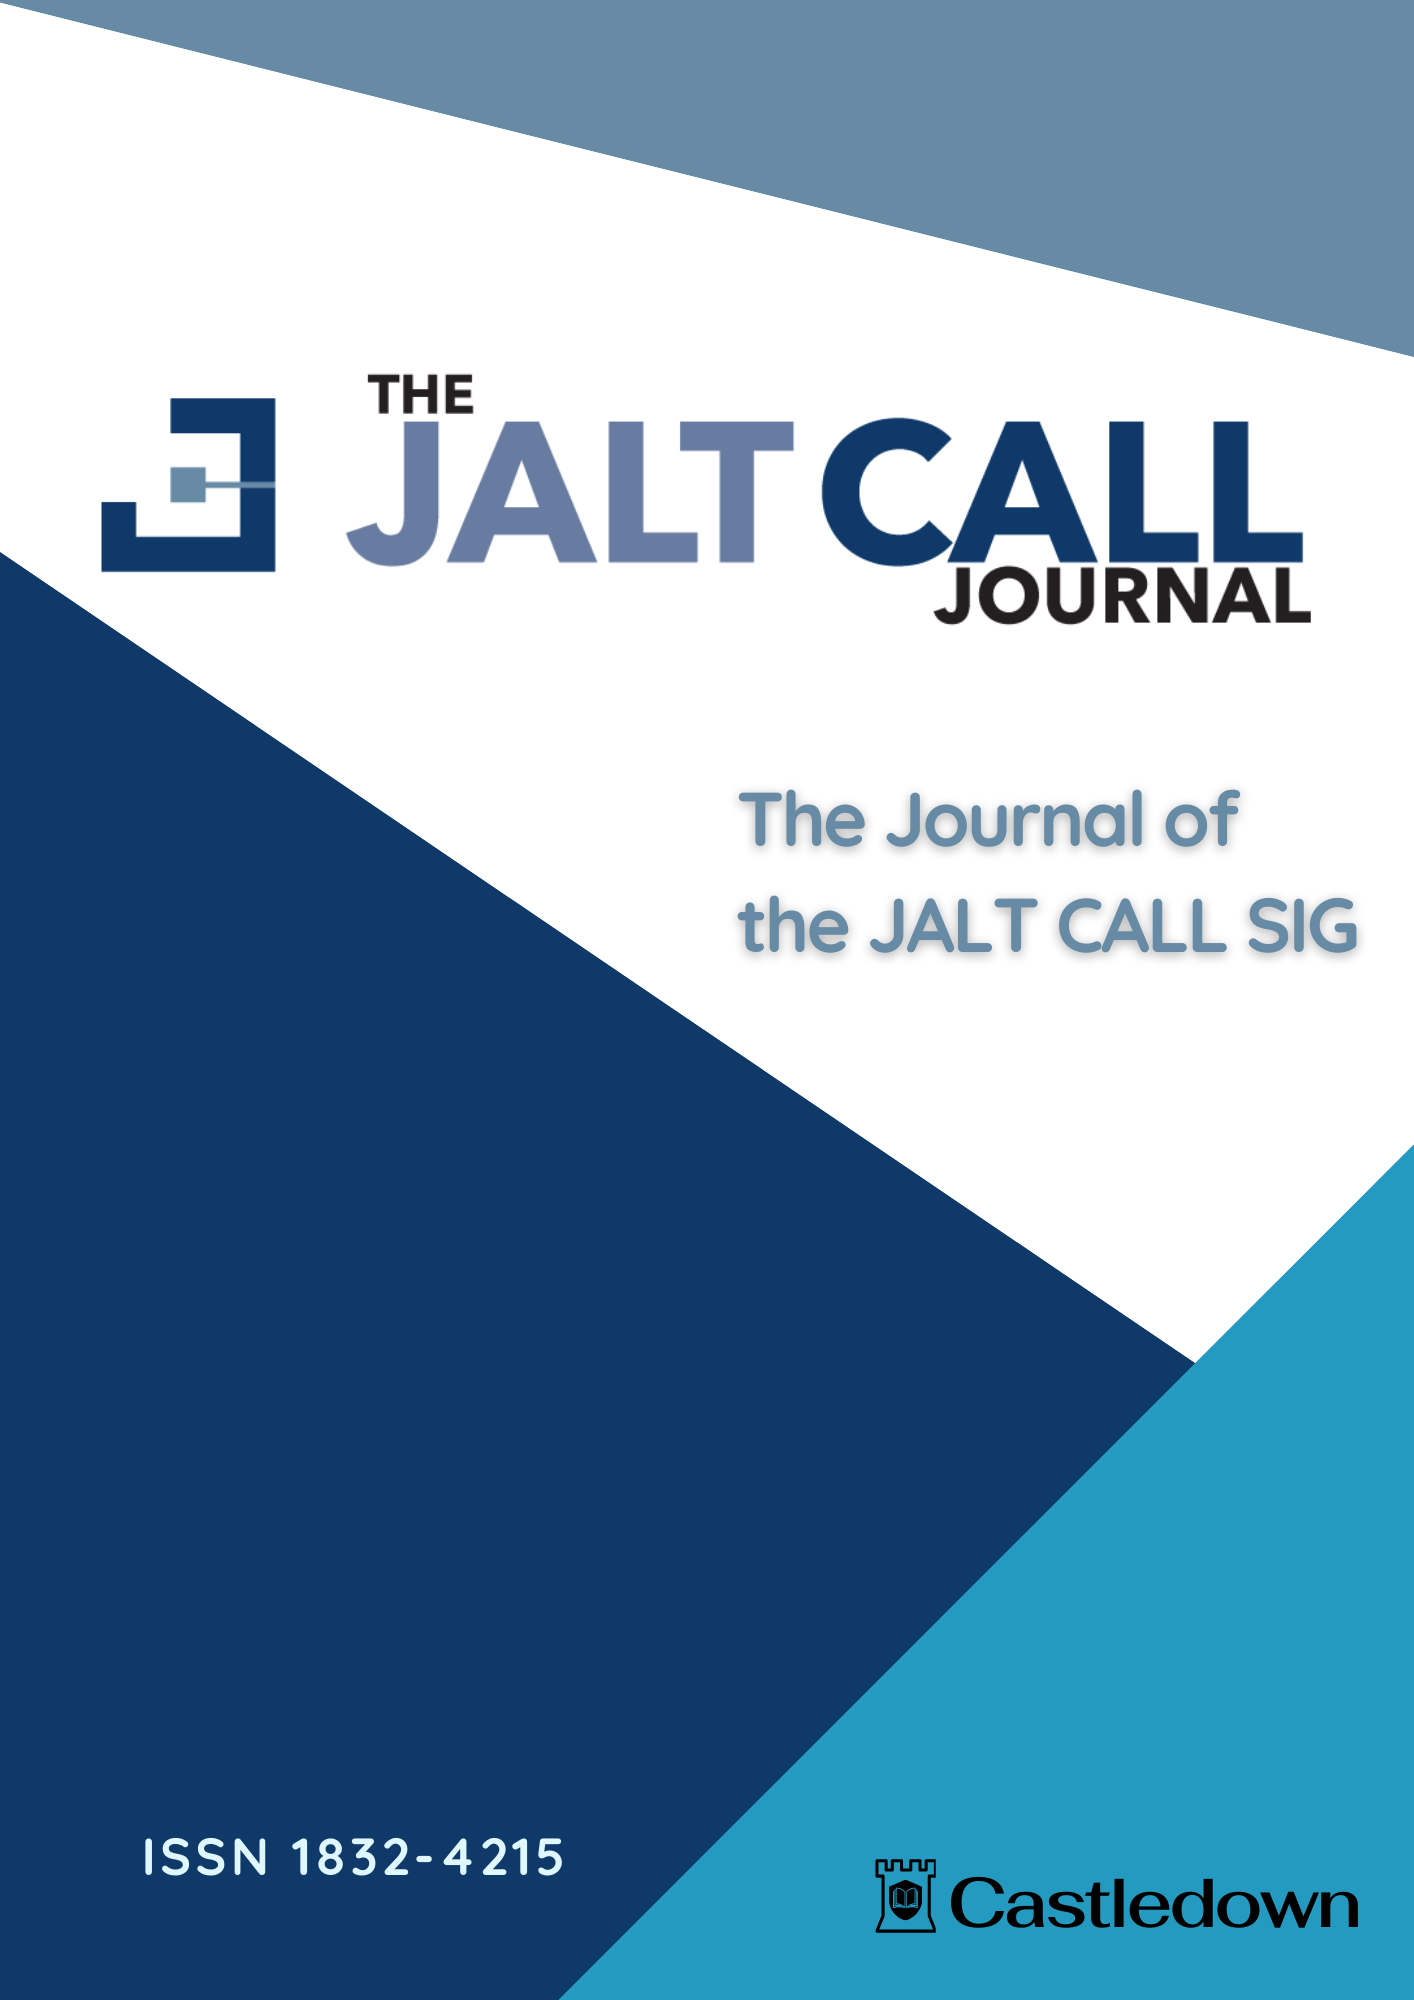 The JALT CALL Journal